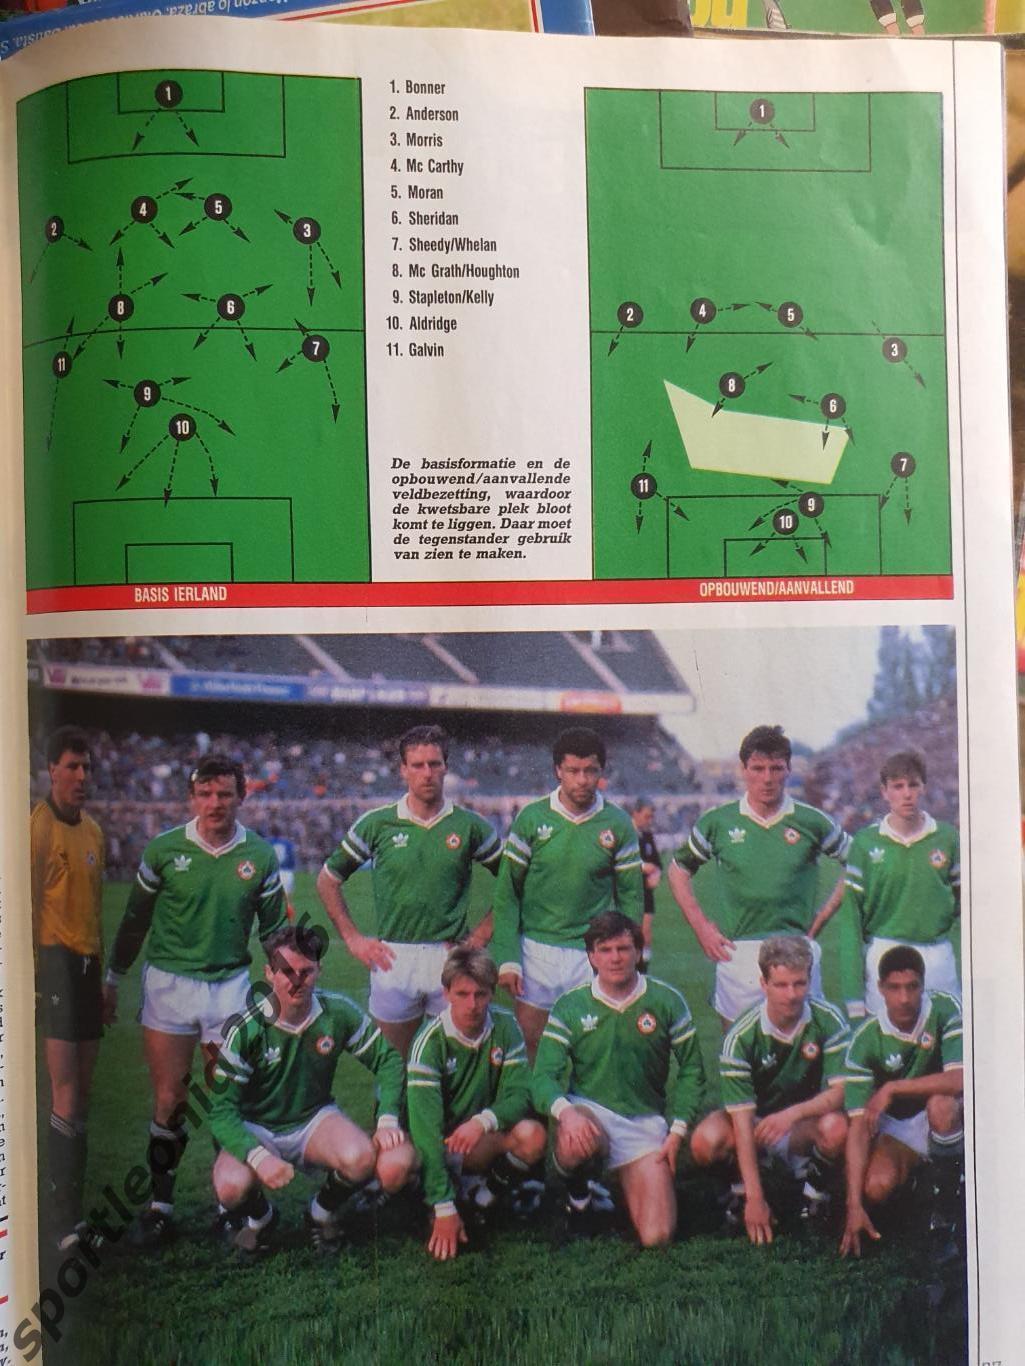 Voetbal International 1988.Годовая подписка.52 номера+4 спецвыпуска к Евро-88.10 1